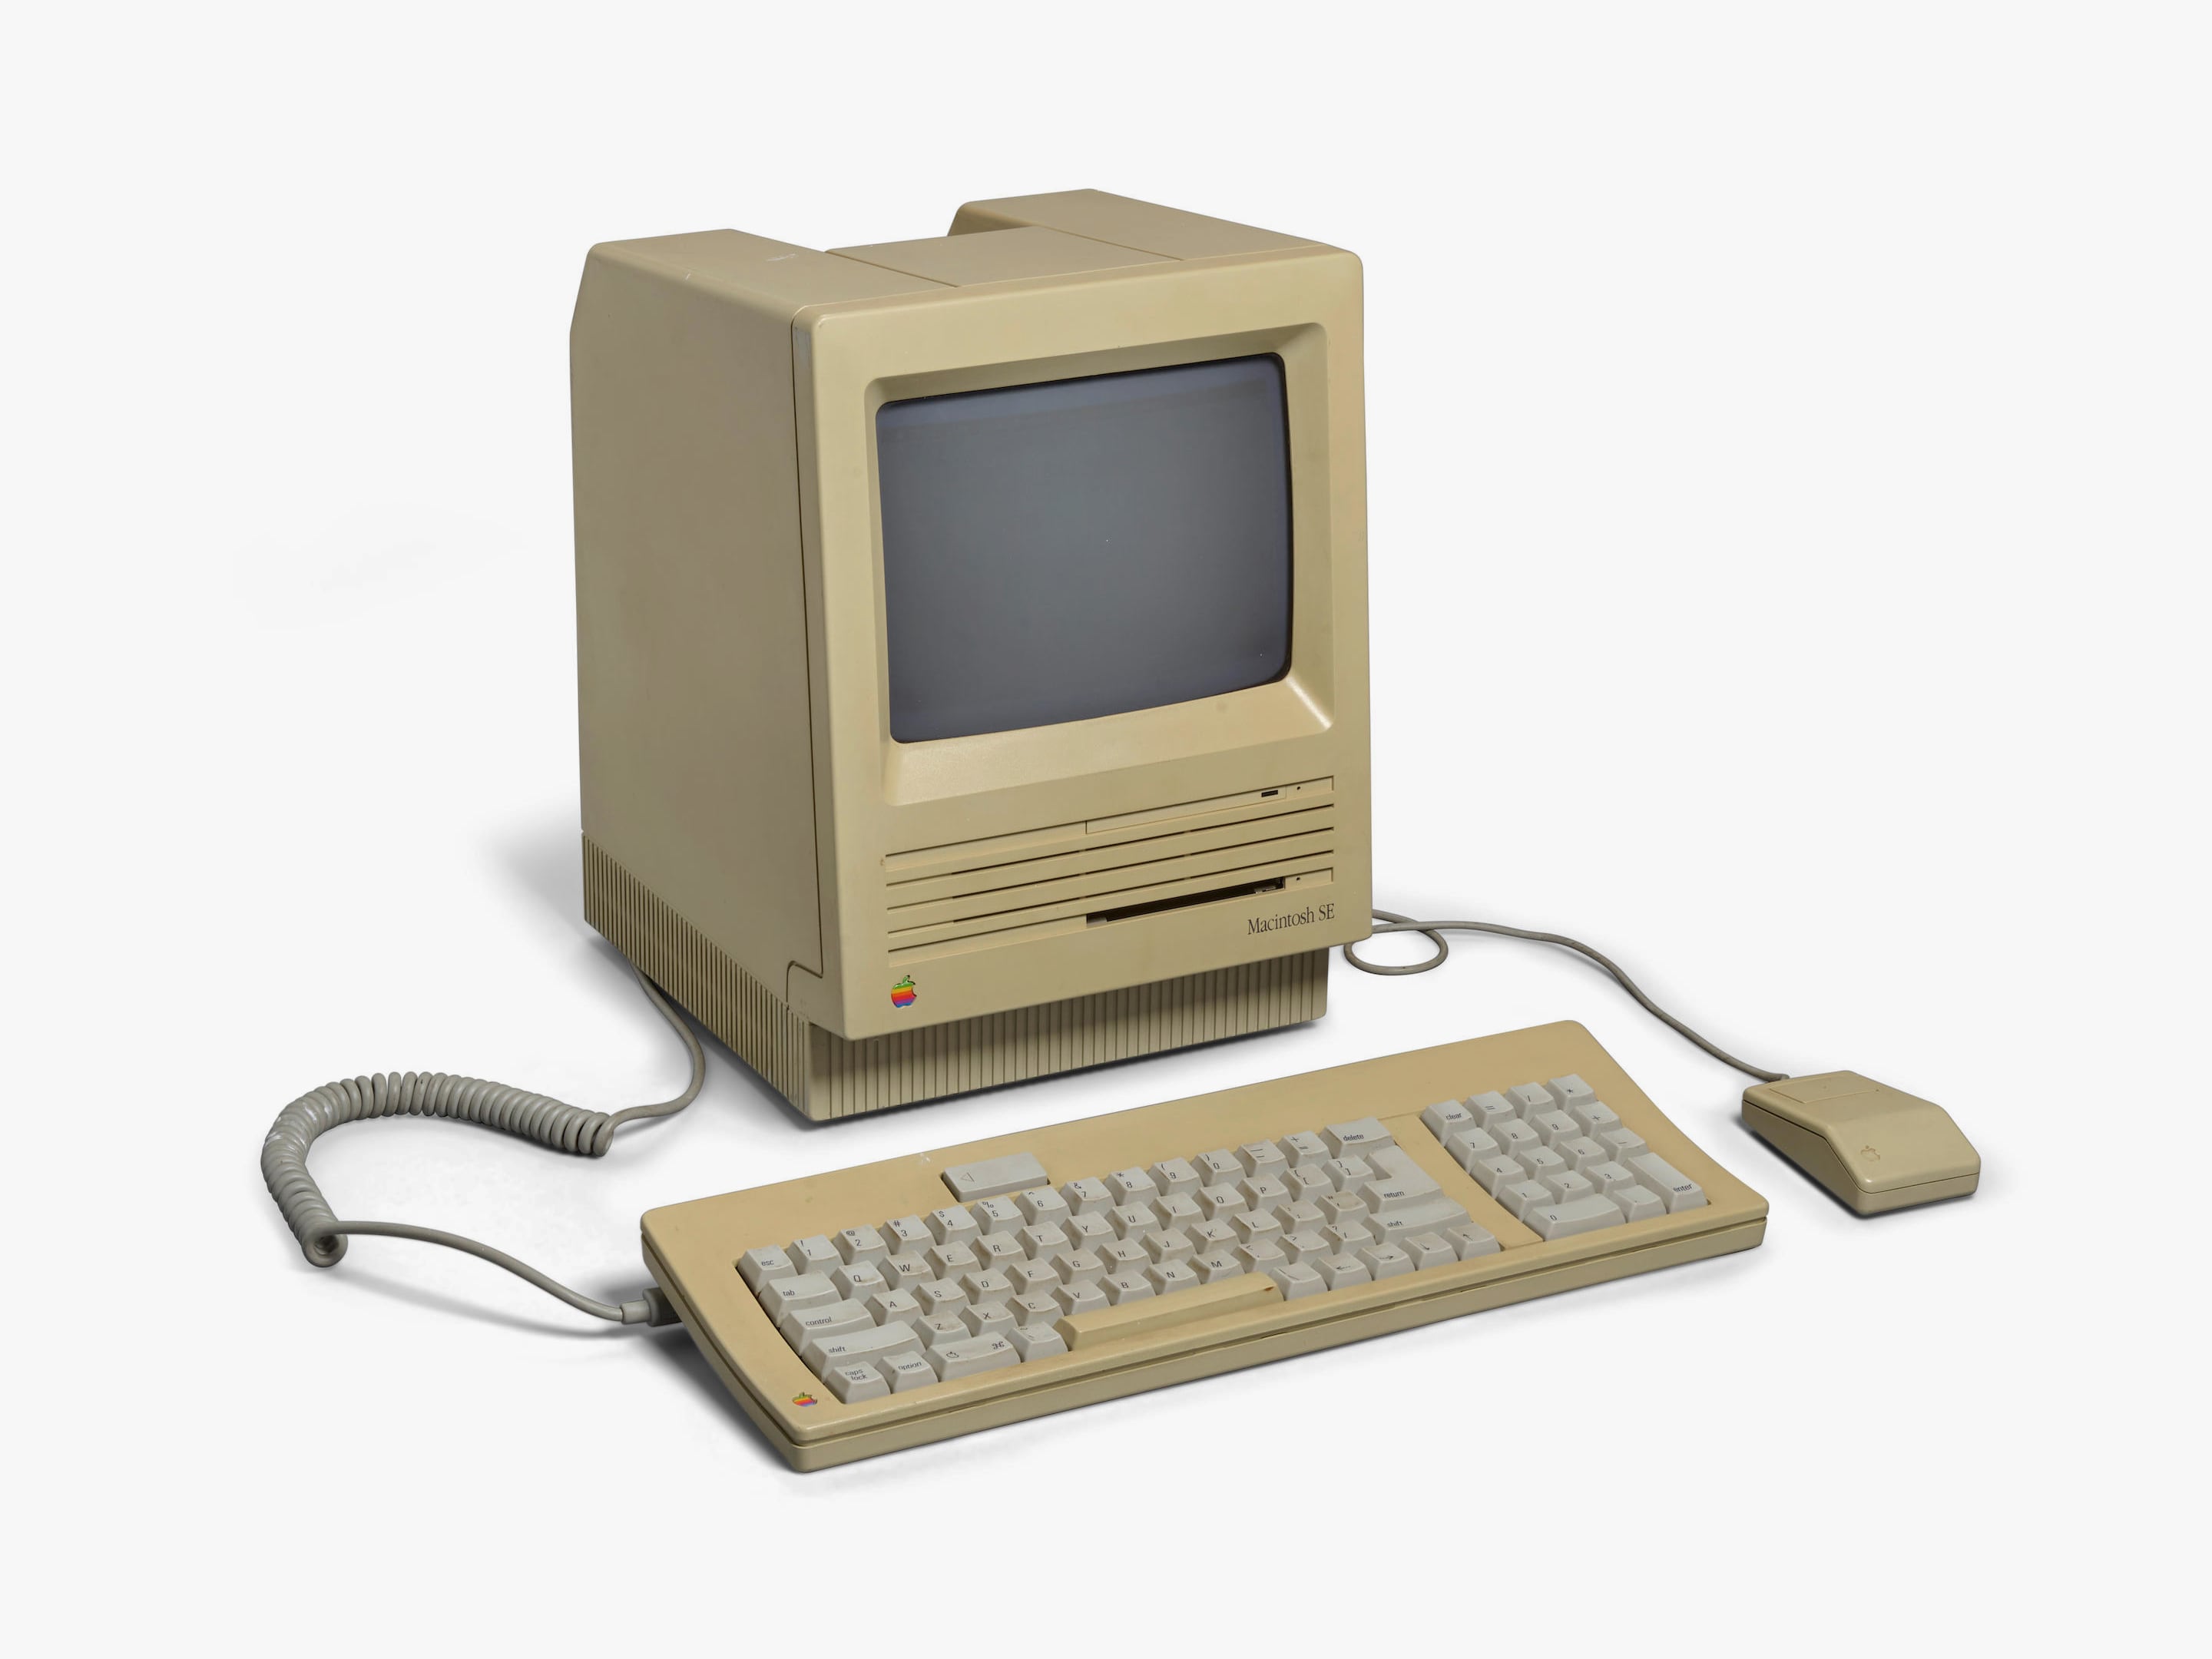 Этим Macintosh пользовался лично Стив Джобс, поэтому компьютер продают за 300 тысяч долларов